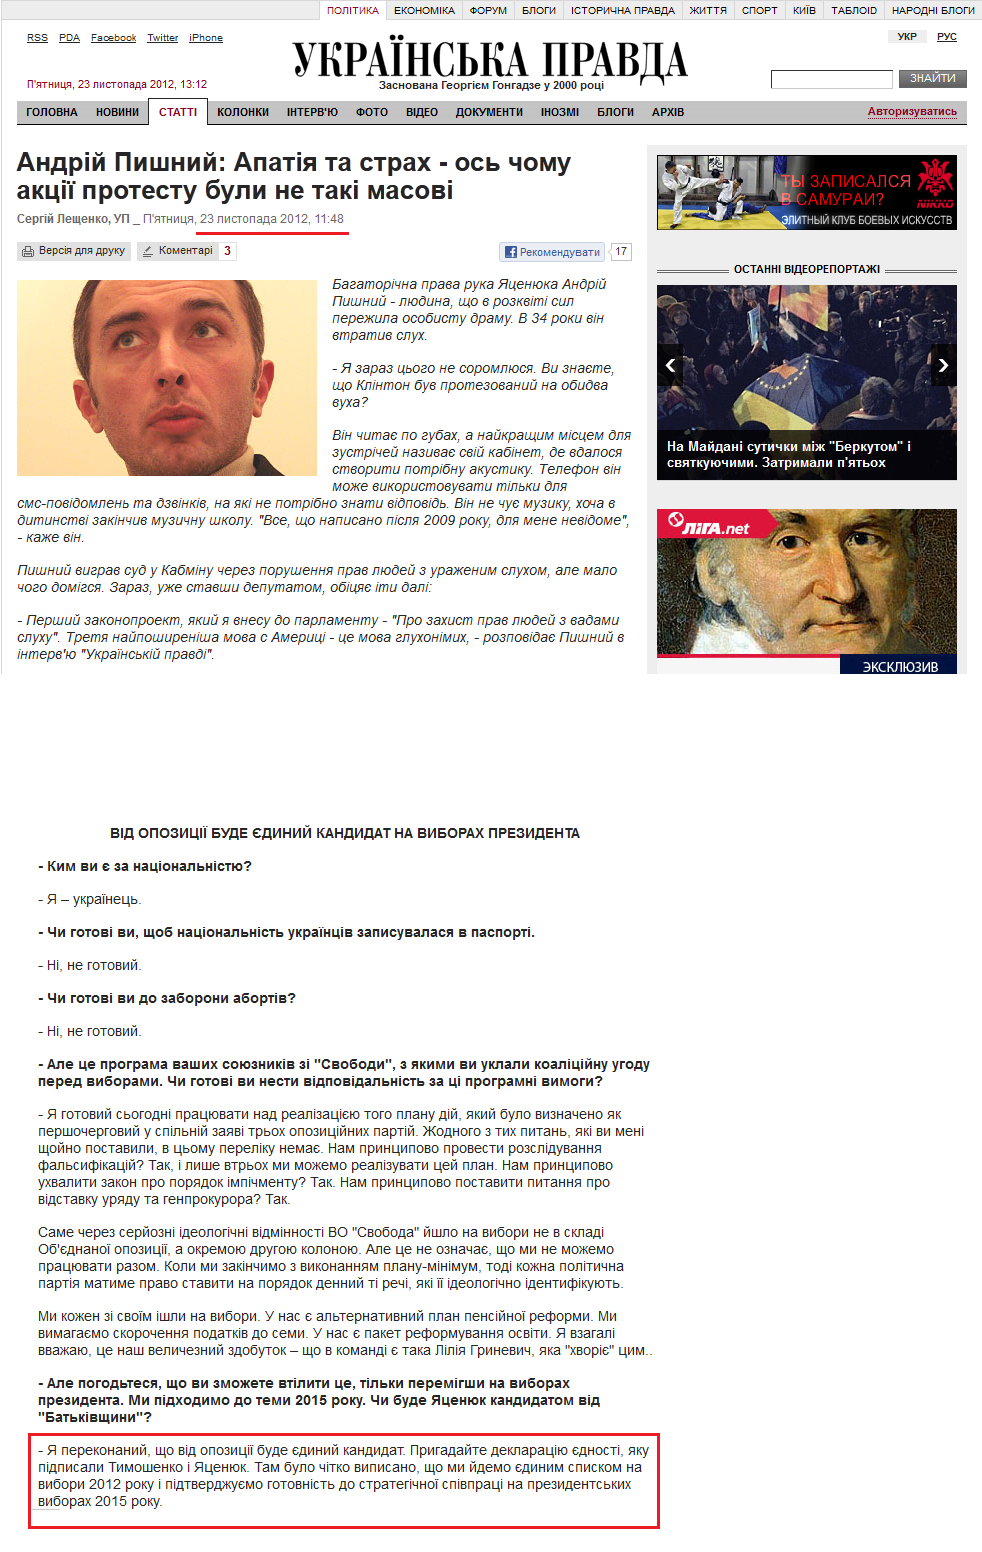 http://www.pravda.com.ua/articles/2012/11/23/6978031/